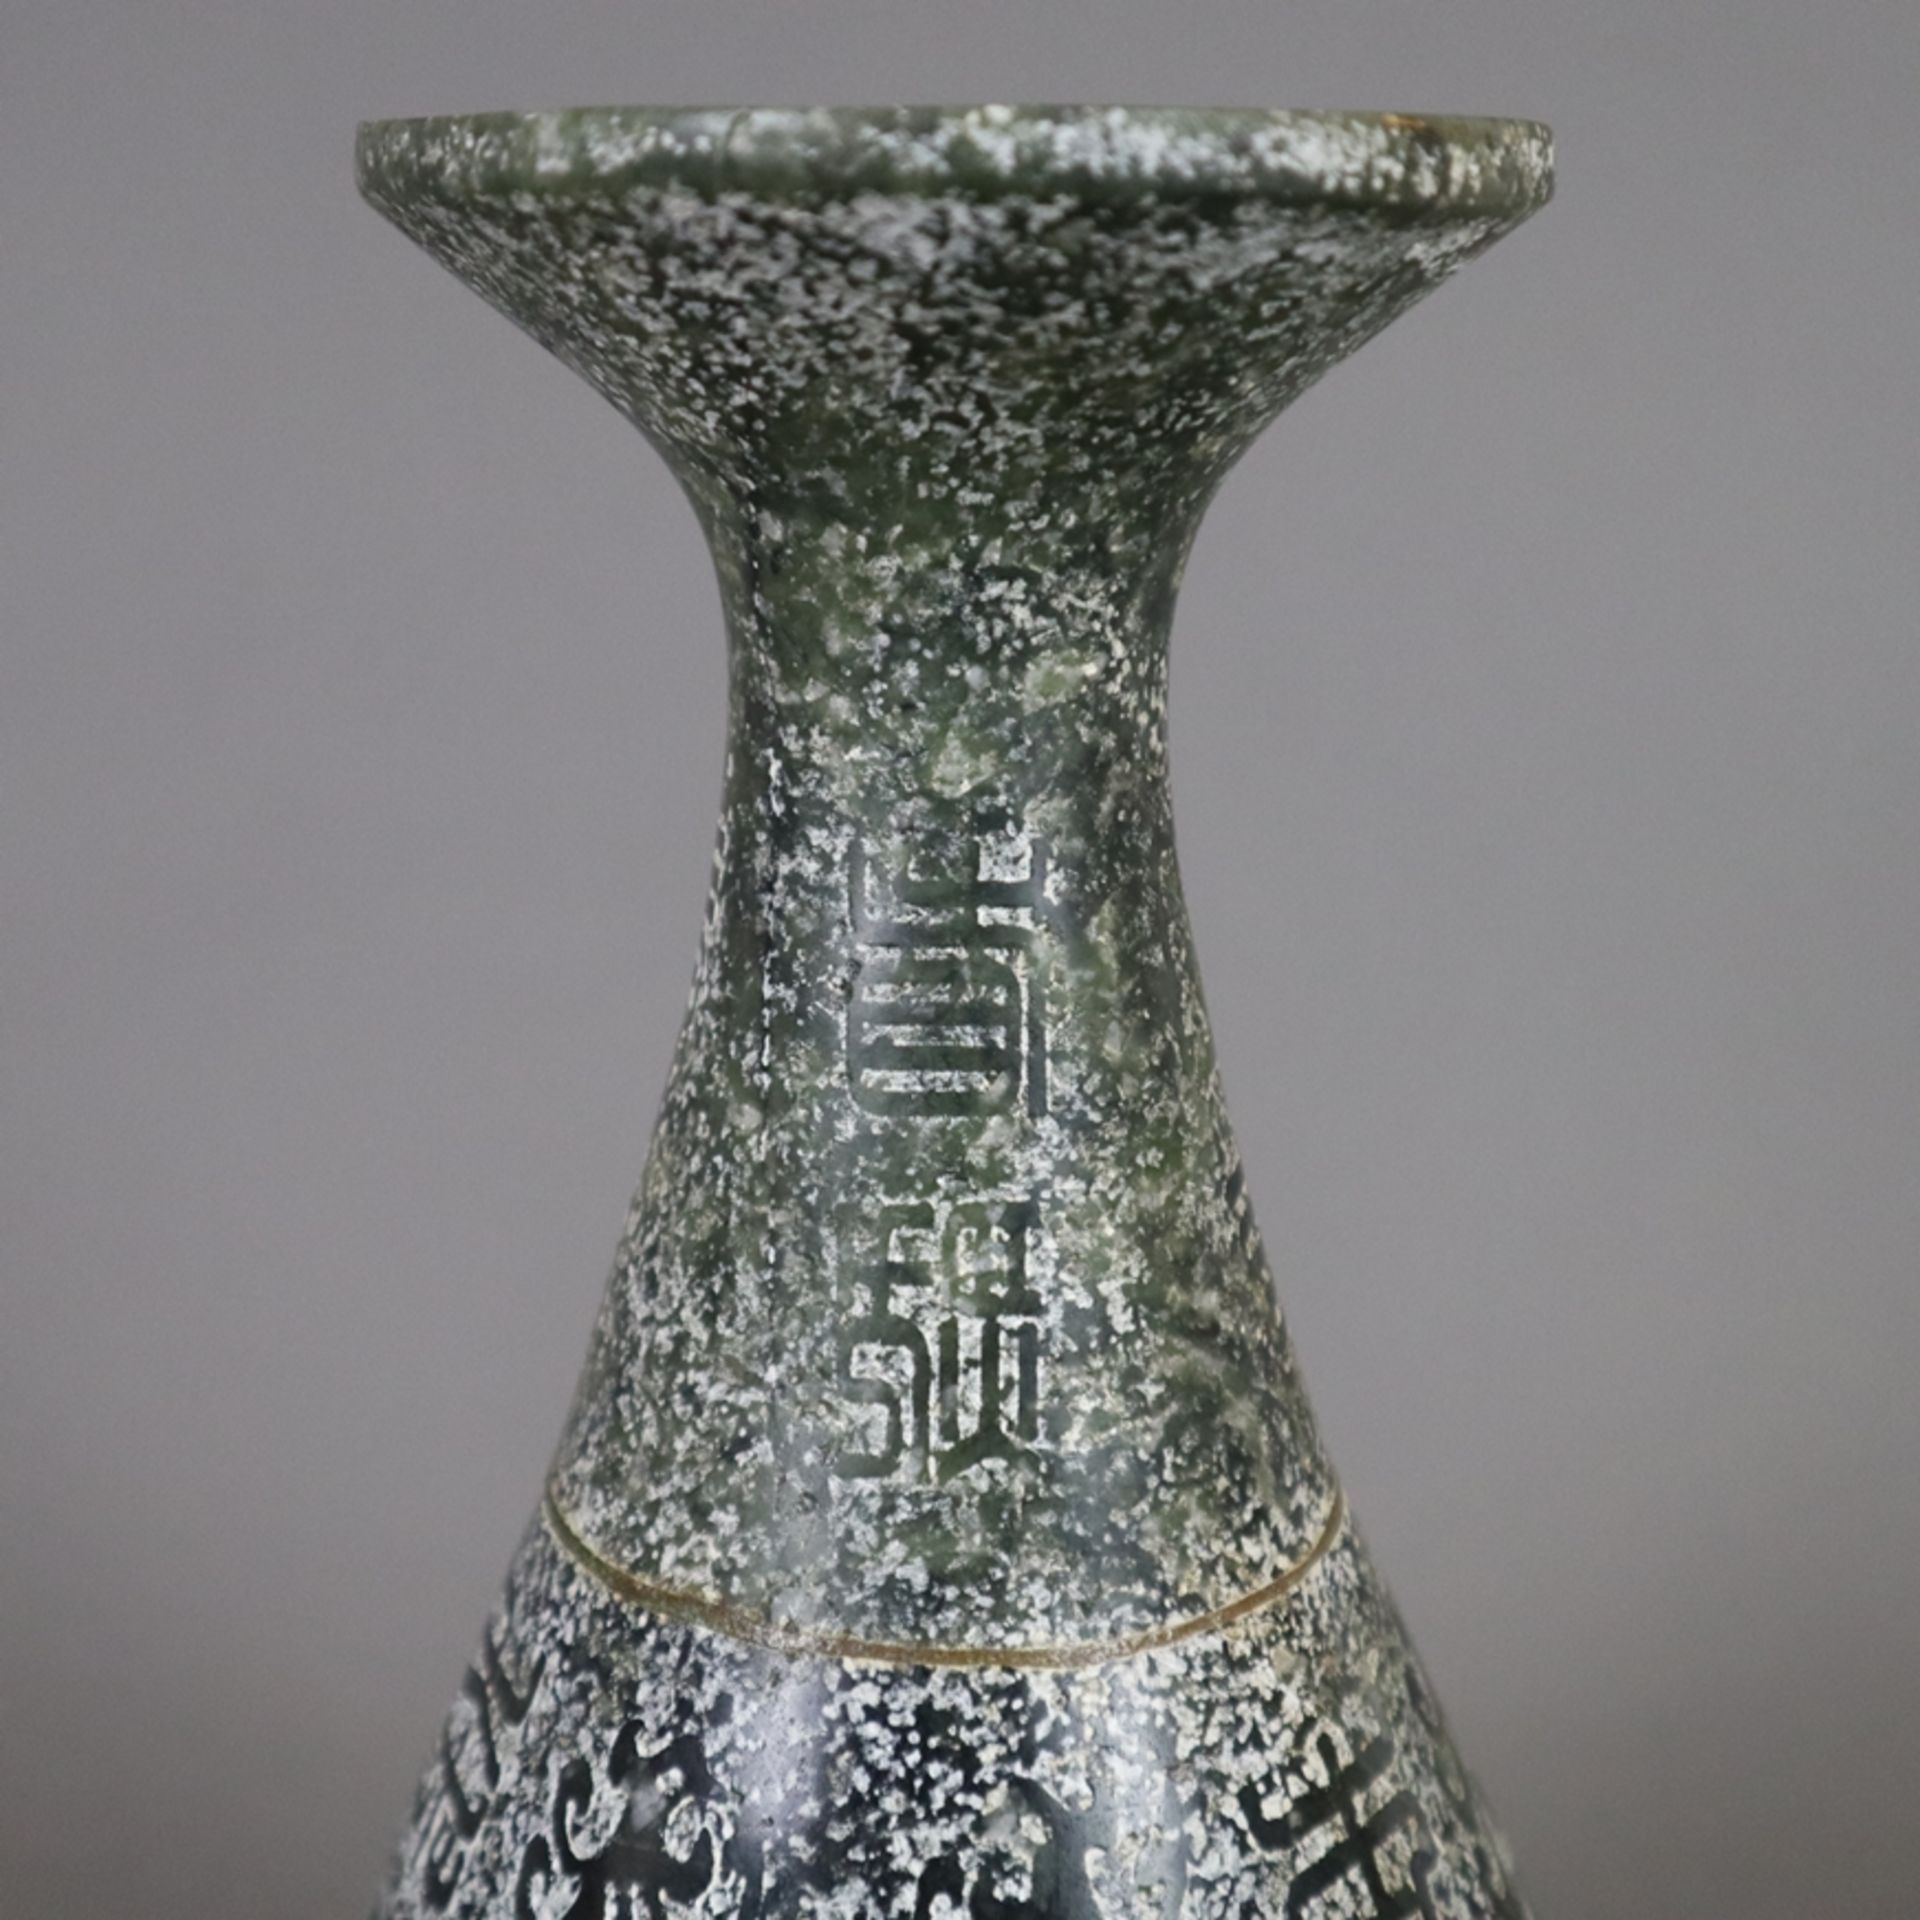 Steinvase - China, schlanker "Yu hu chun ping"-Typus, Kalkstein, teils poliert, dekoriert mit archa - Bild 3 aus 10